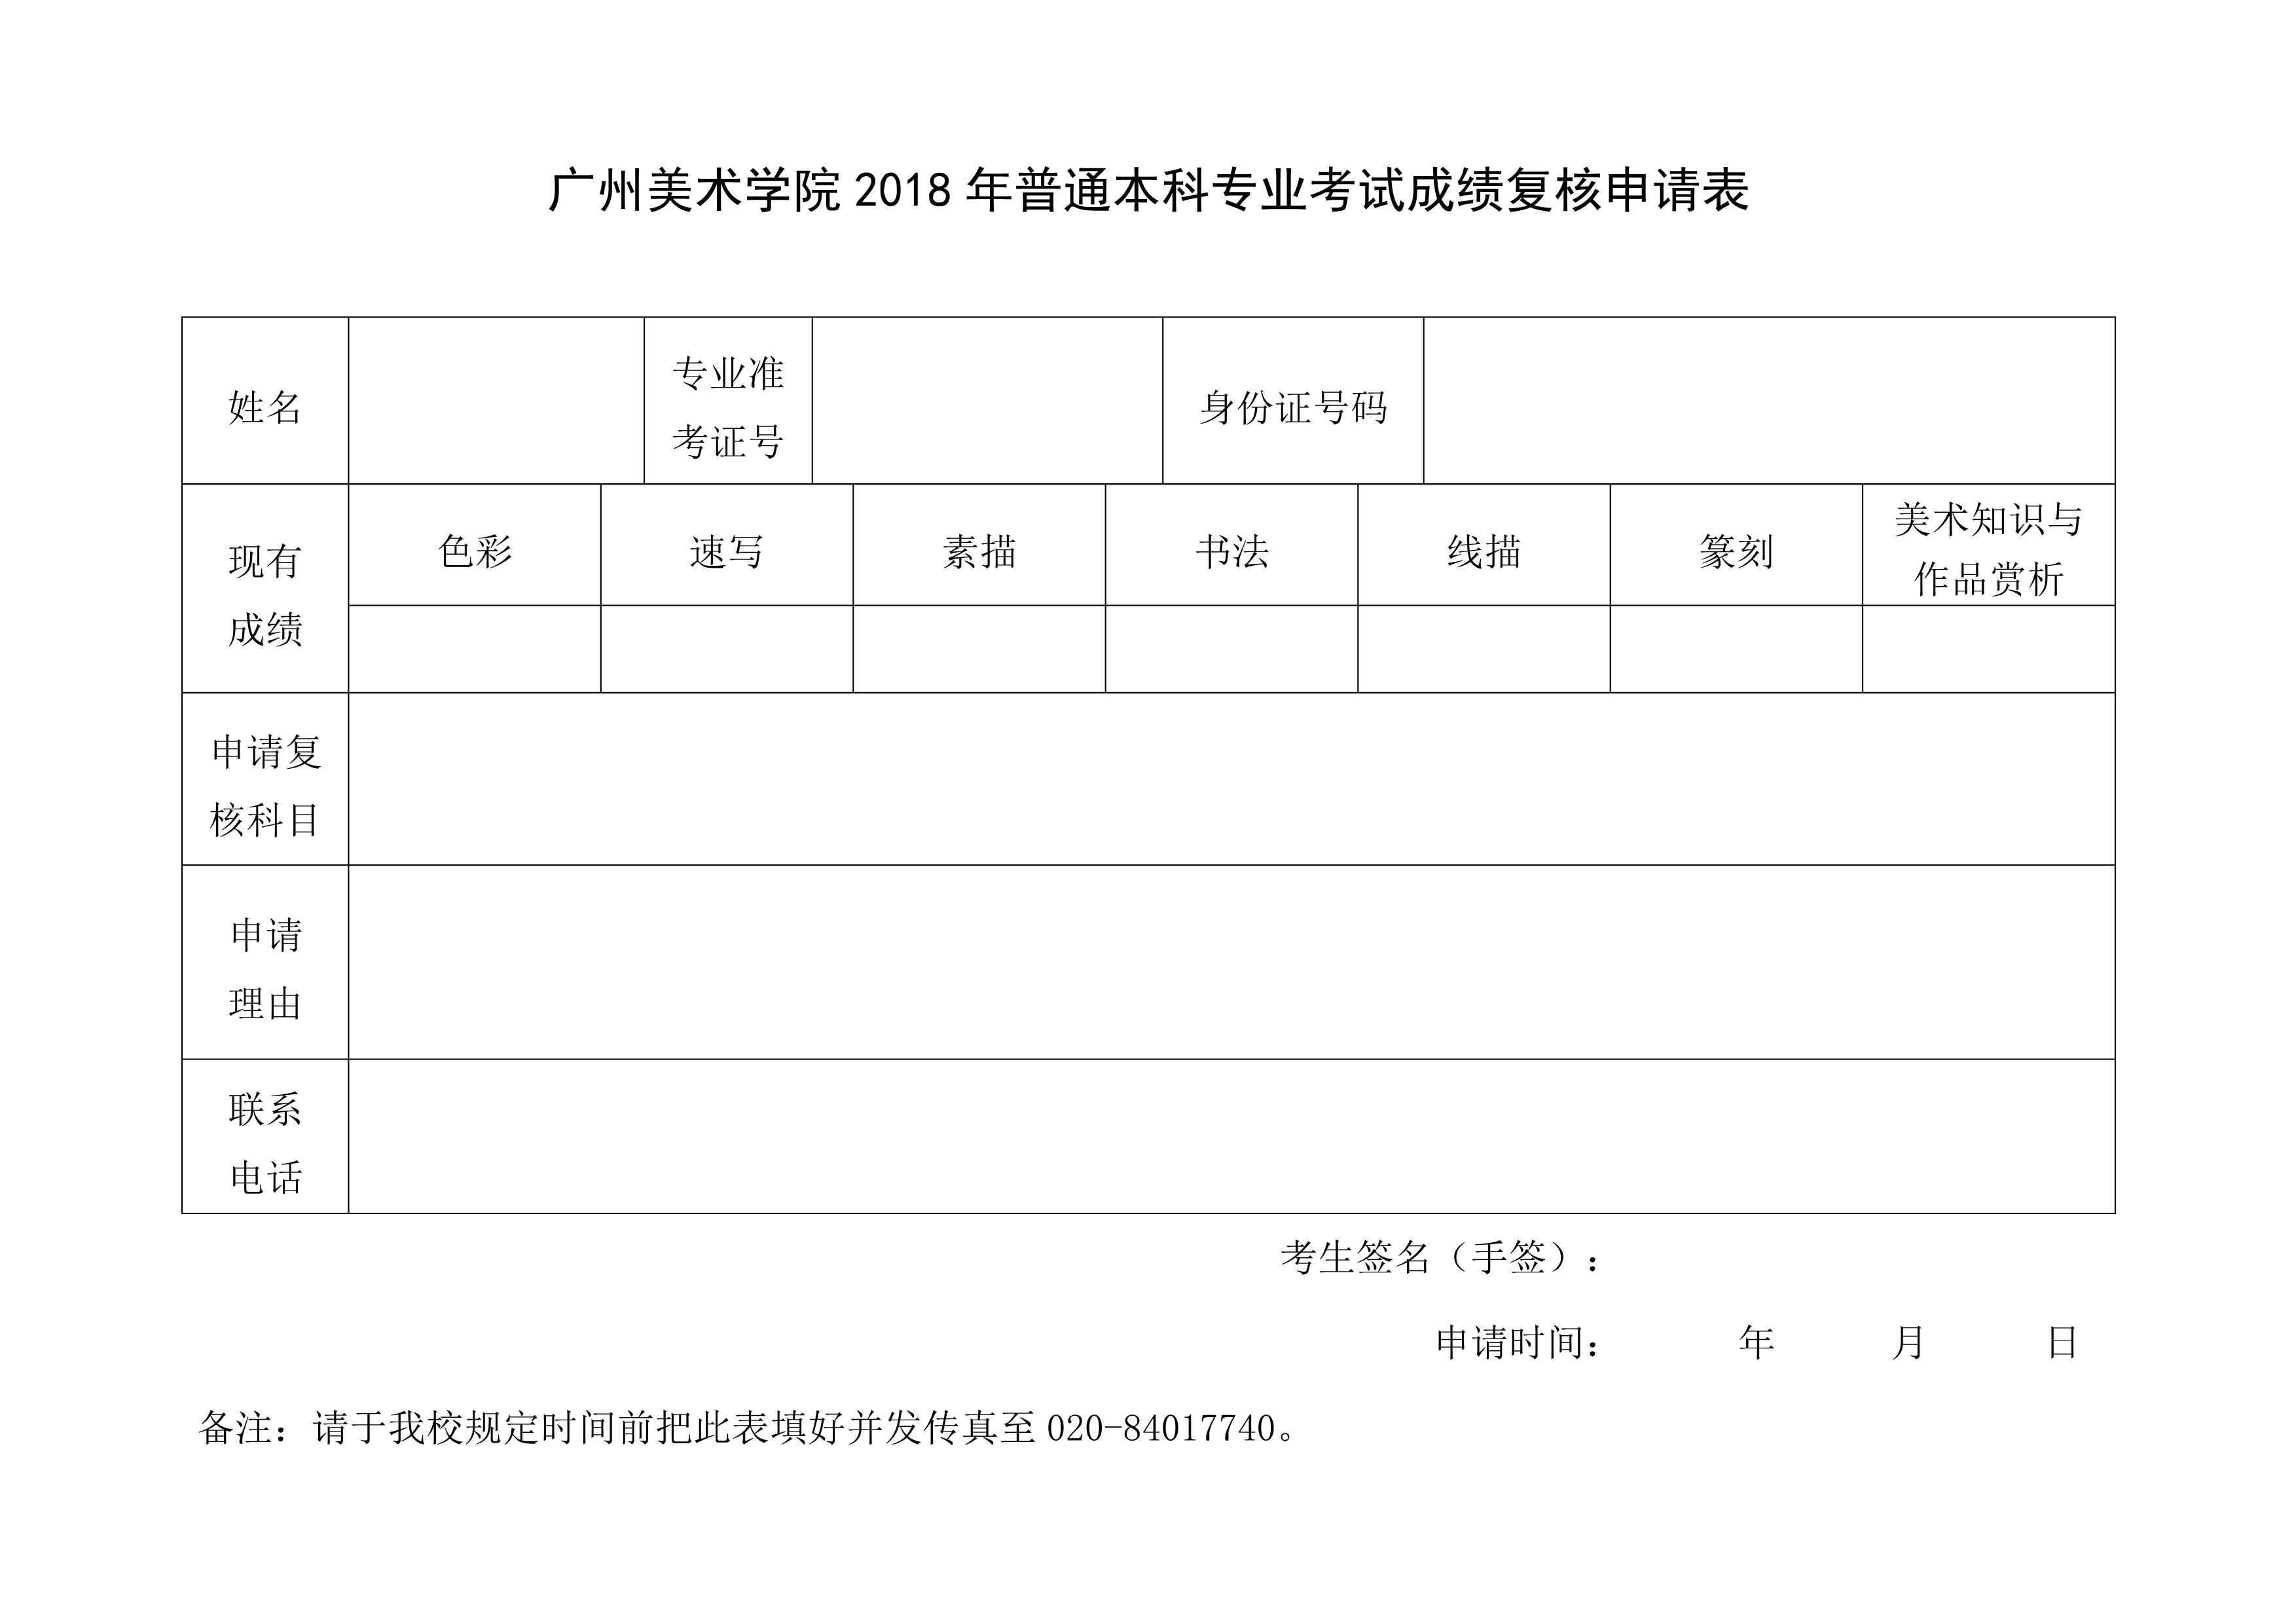 1 附件 广州美术学院2018年普通本科专业考试成绩复核申请表_1.jpg